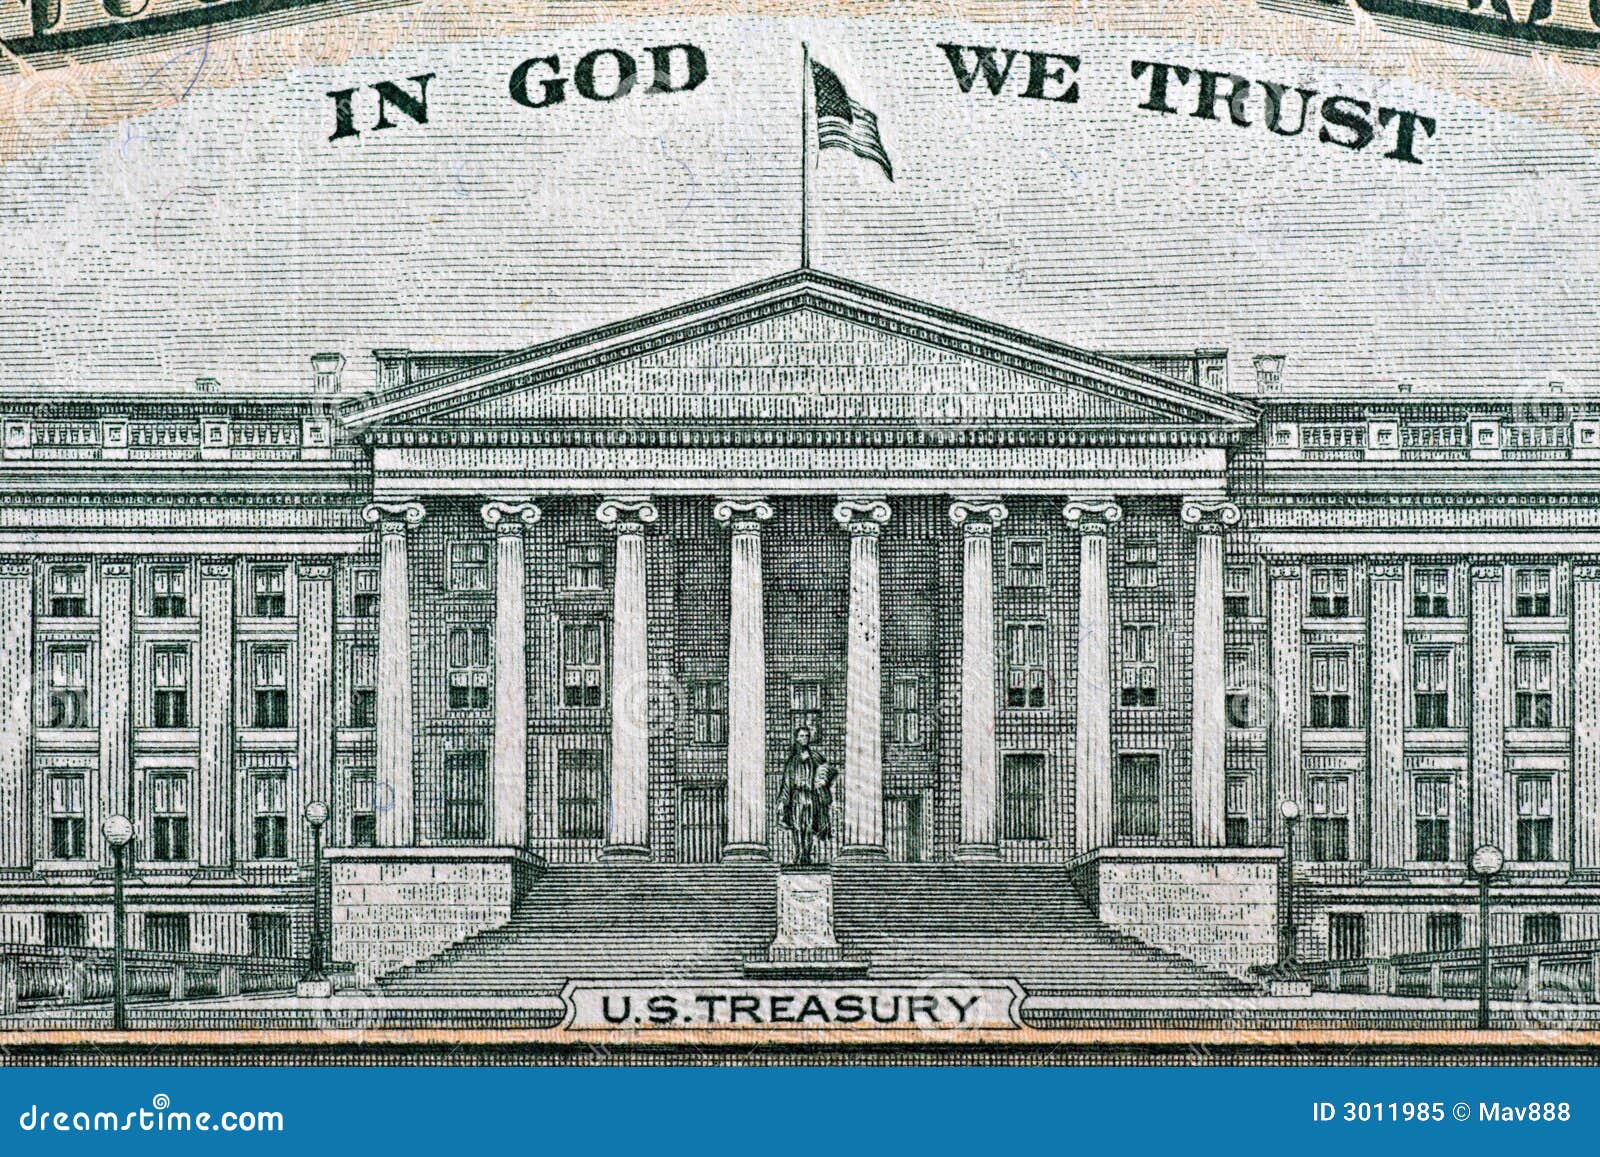 us treasury